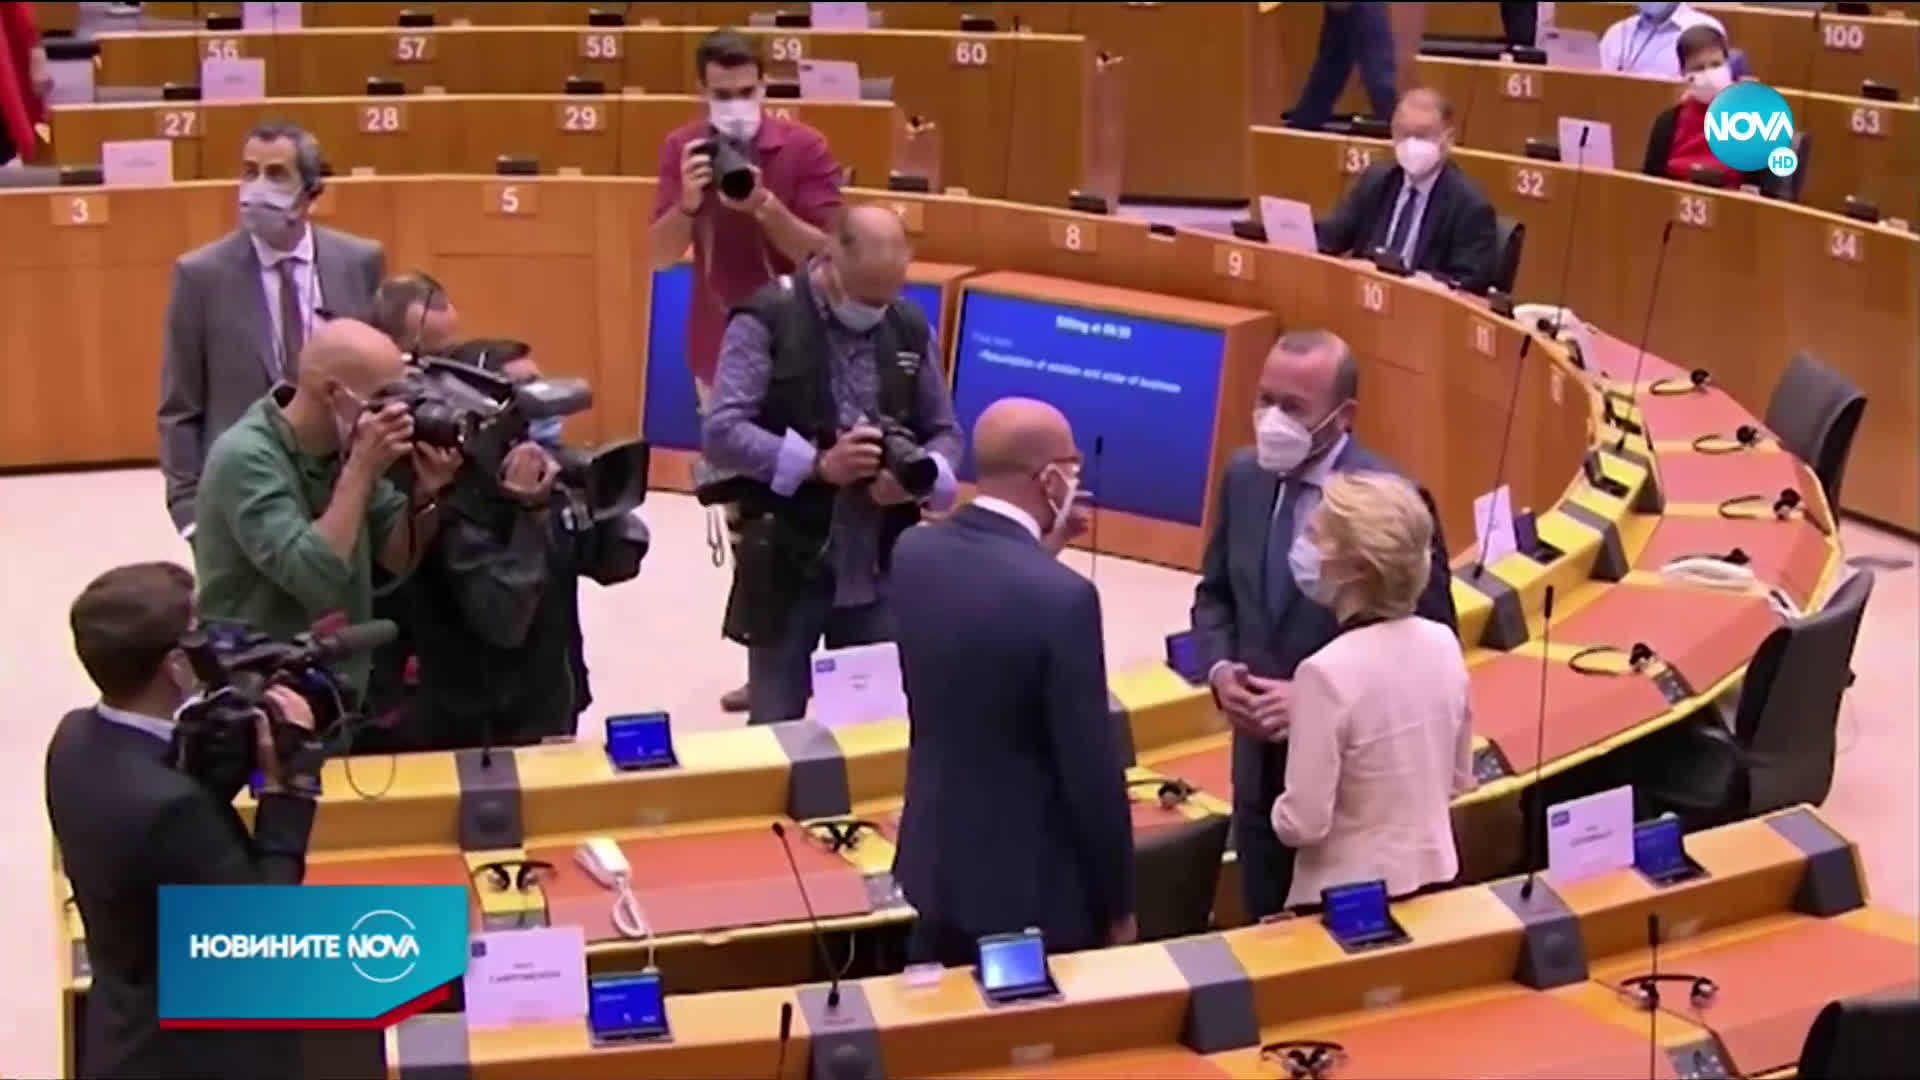 Европейският парламент може да блокира бюджета на ЕС